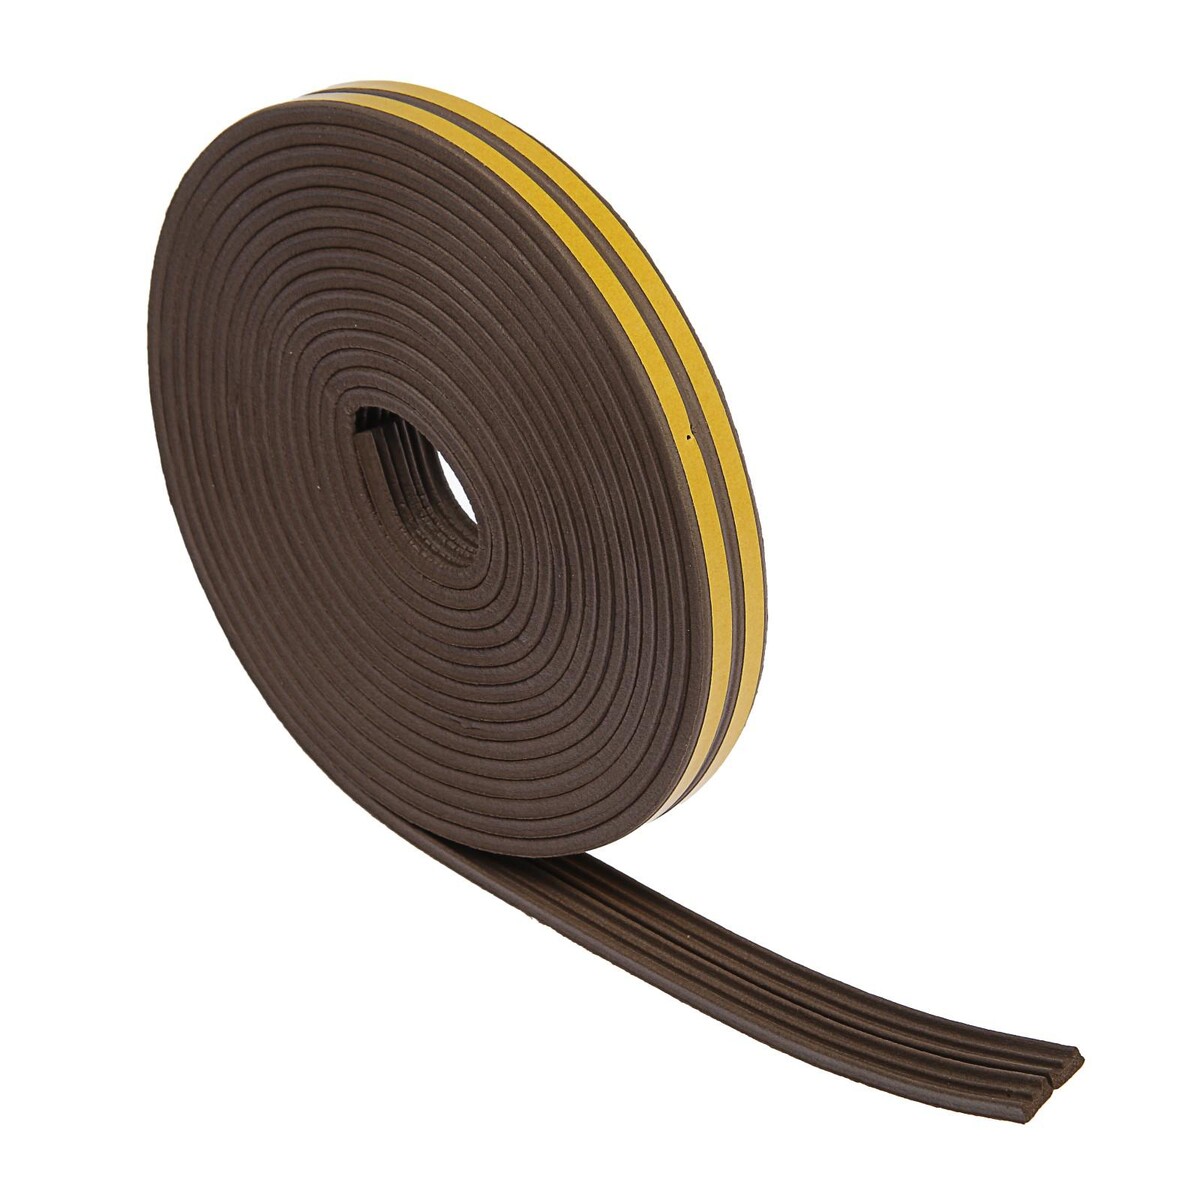 Уплотнитель резиновый тундра krep, профиль е, размер 4х9 мм, коричневый, в упаковке 10 м. медбол резиновый 6 кг bronze gym bg fa mb6